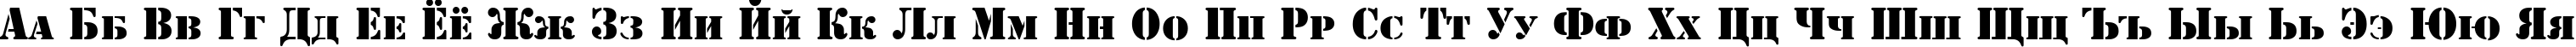 Пример написания русского алфавита шрифтом ShablonCTT